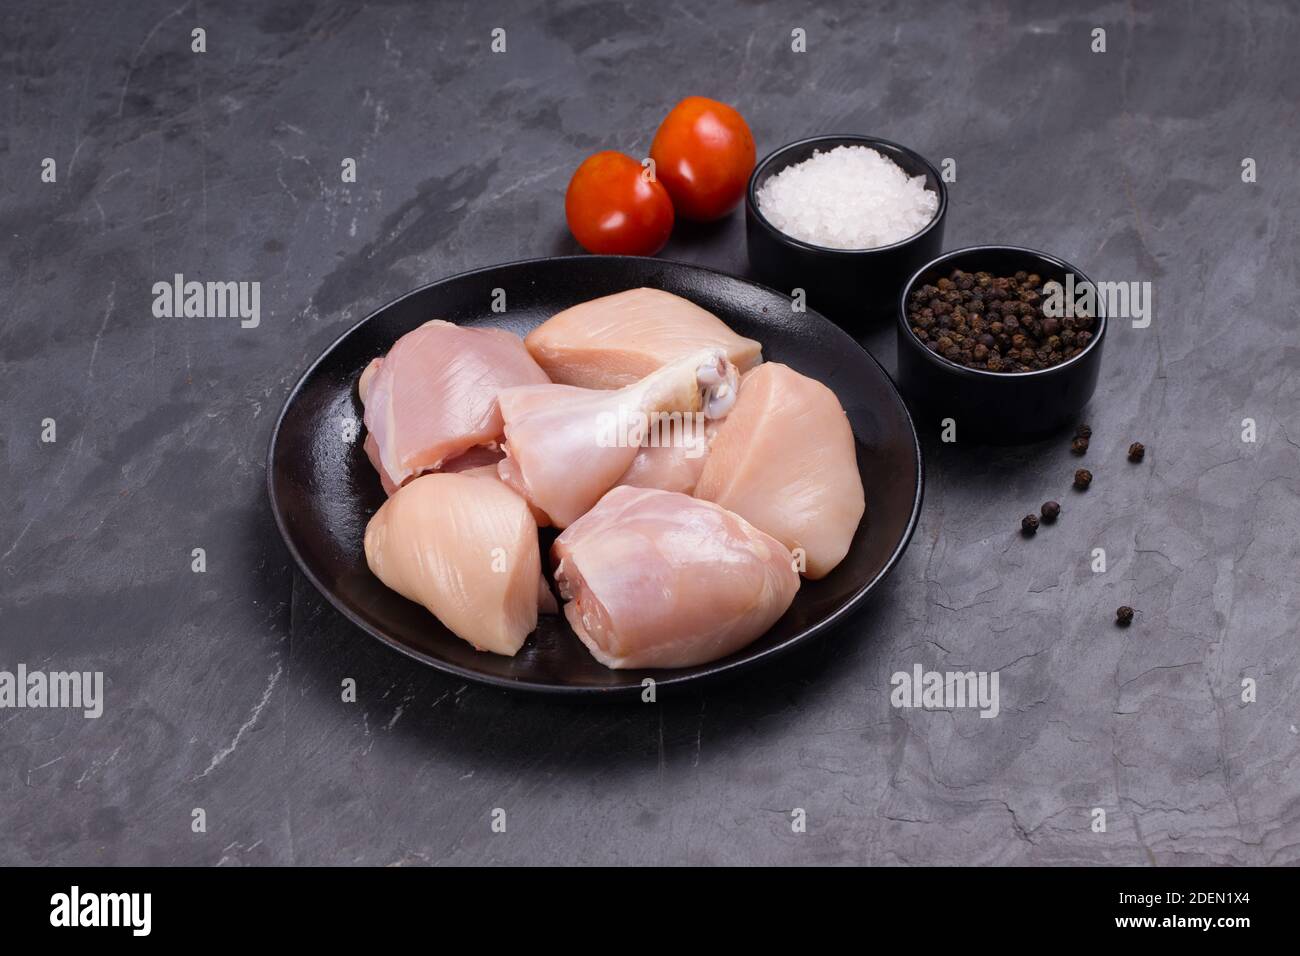 Rohes Huhn zartes Curry ohne Haut auf schwarzem Teller angeordnet geschnitten und garniert mit, Tomaten, schwarzem Pfeffer und Salz auf Stein texturierten Hintergrund Stockfoto